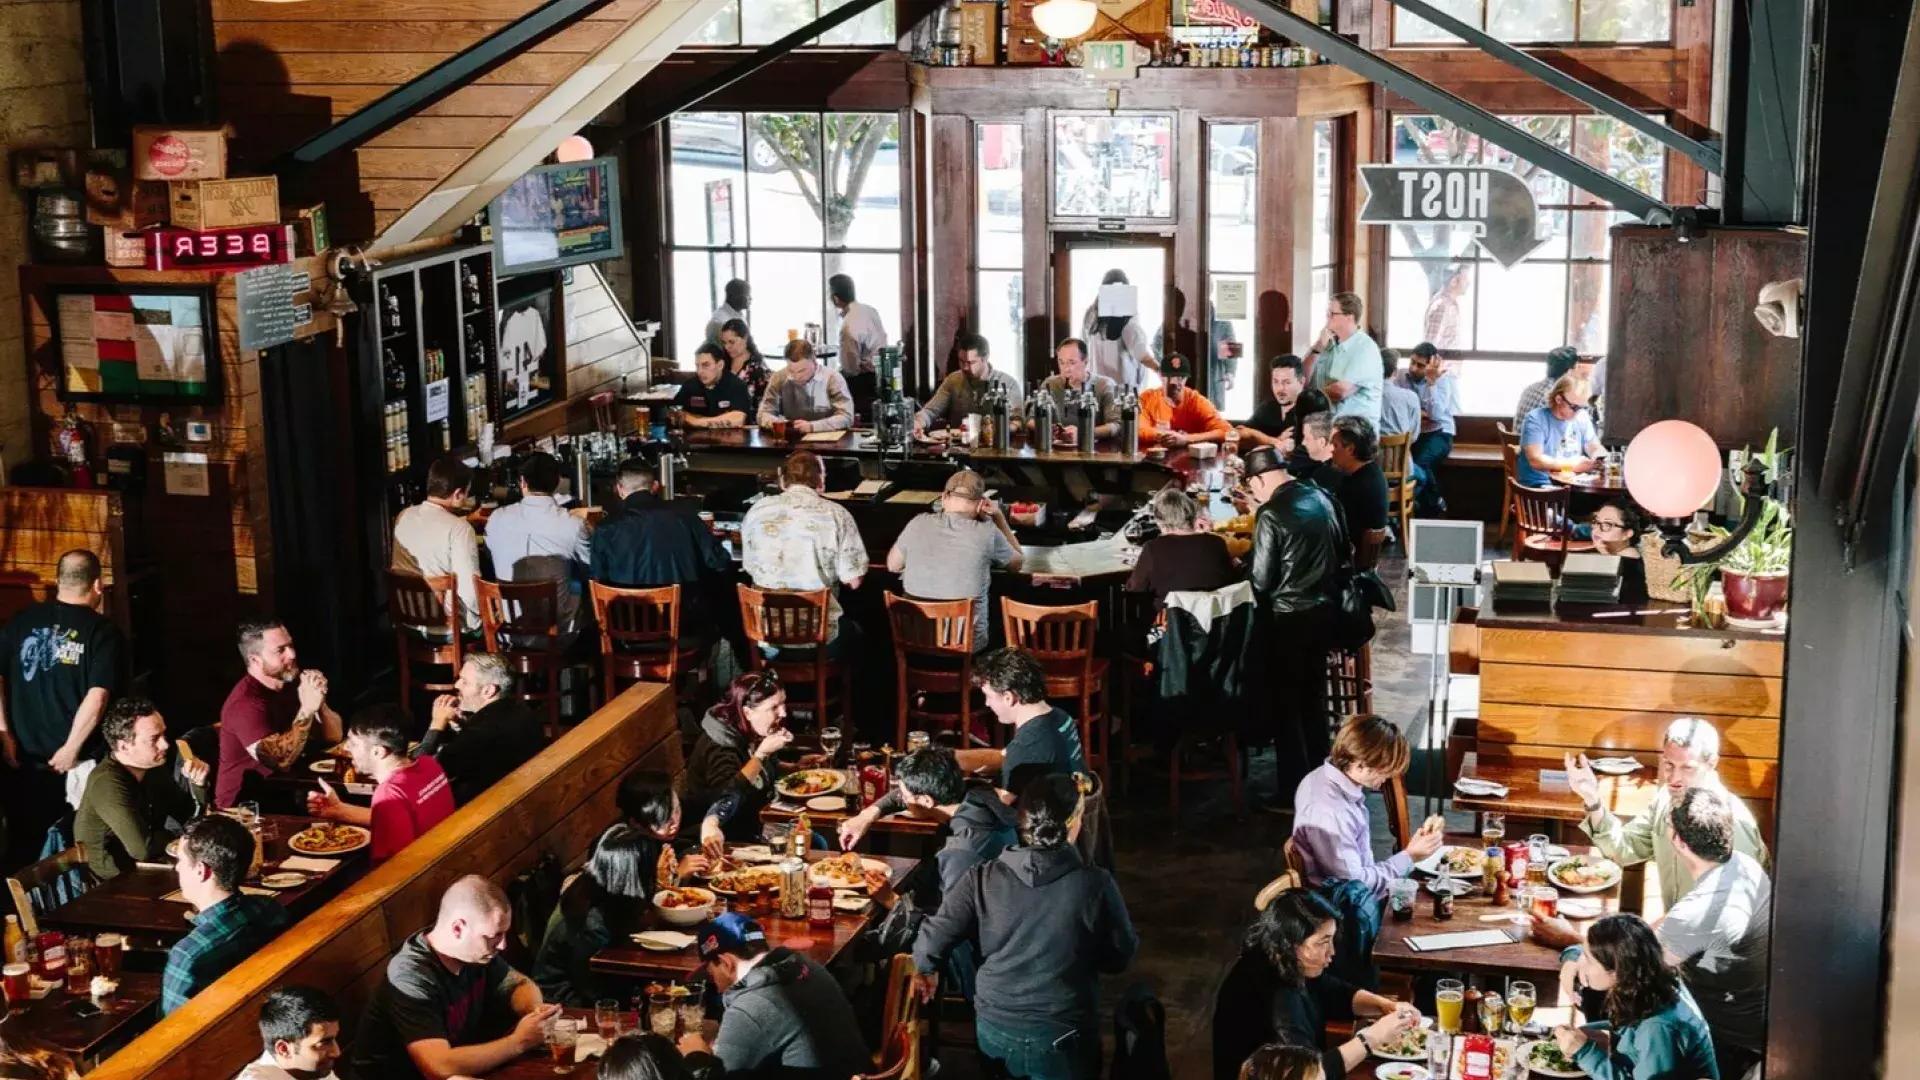 サンフランシスコの修正第 21 条醸造所内で飲食をする常連客。